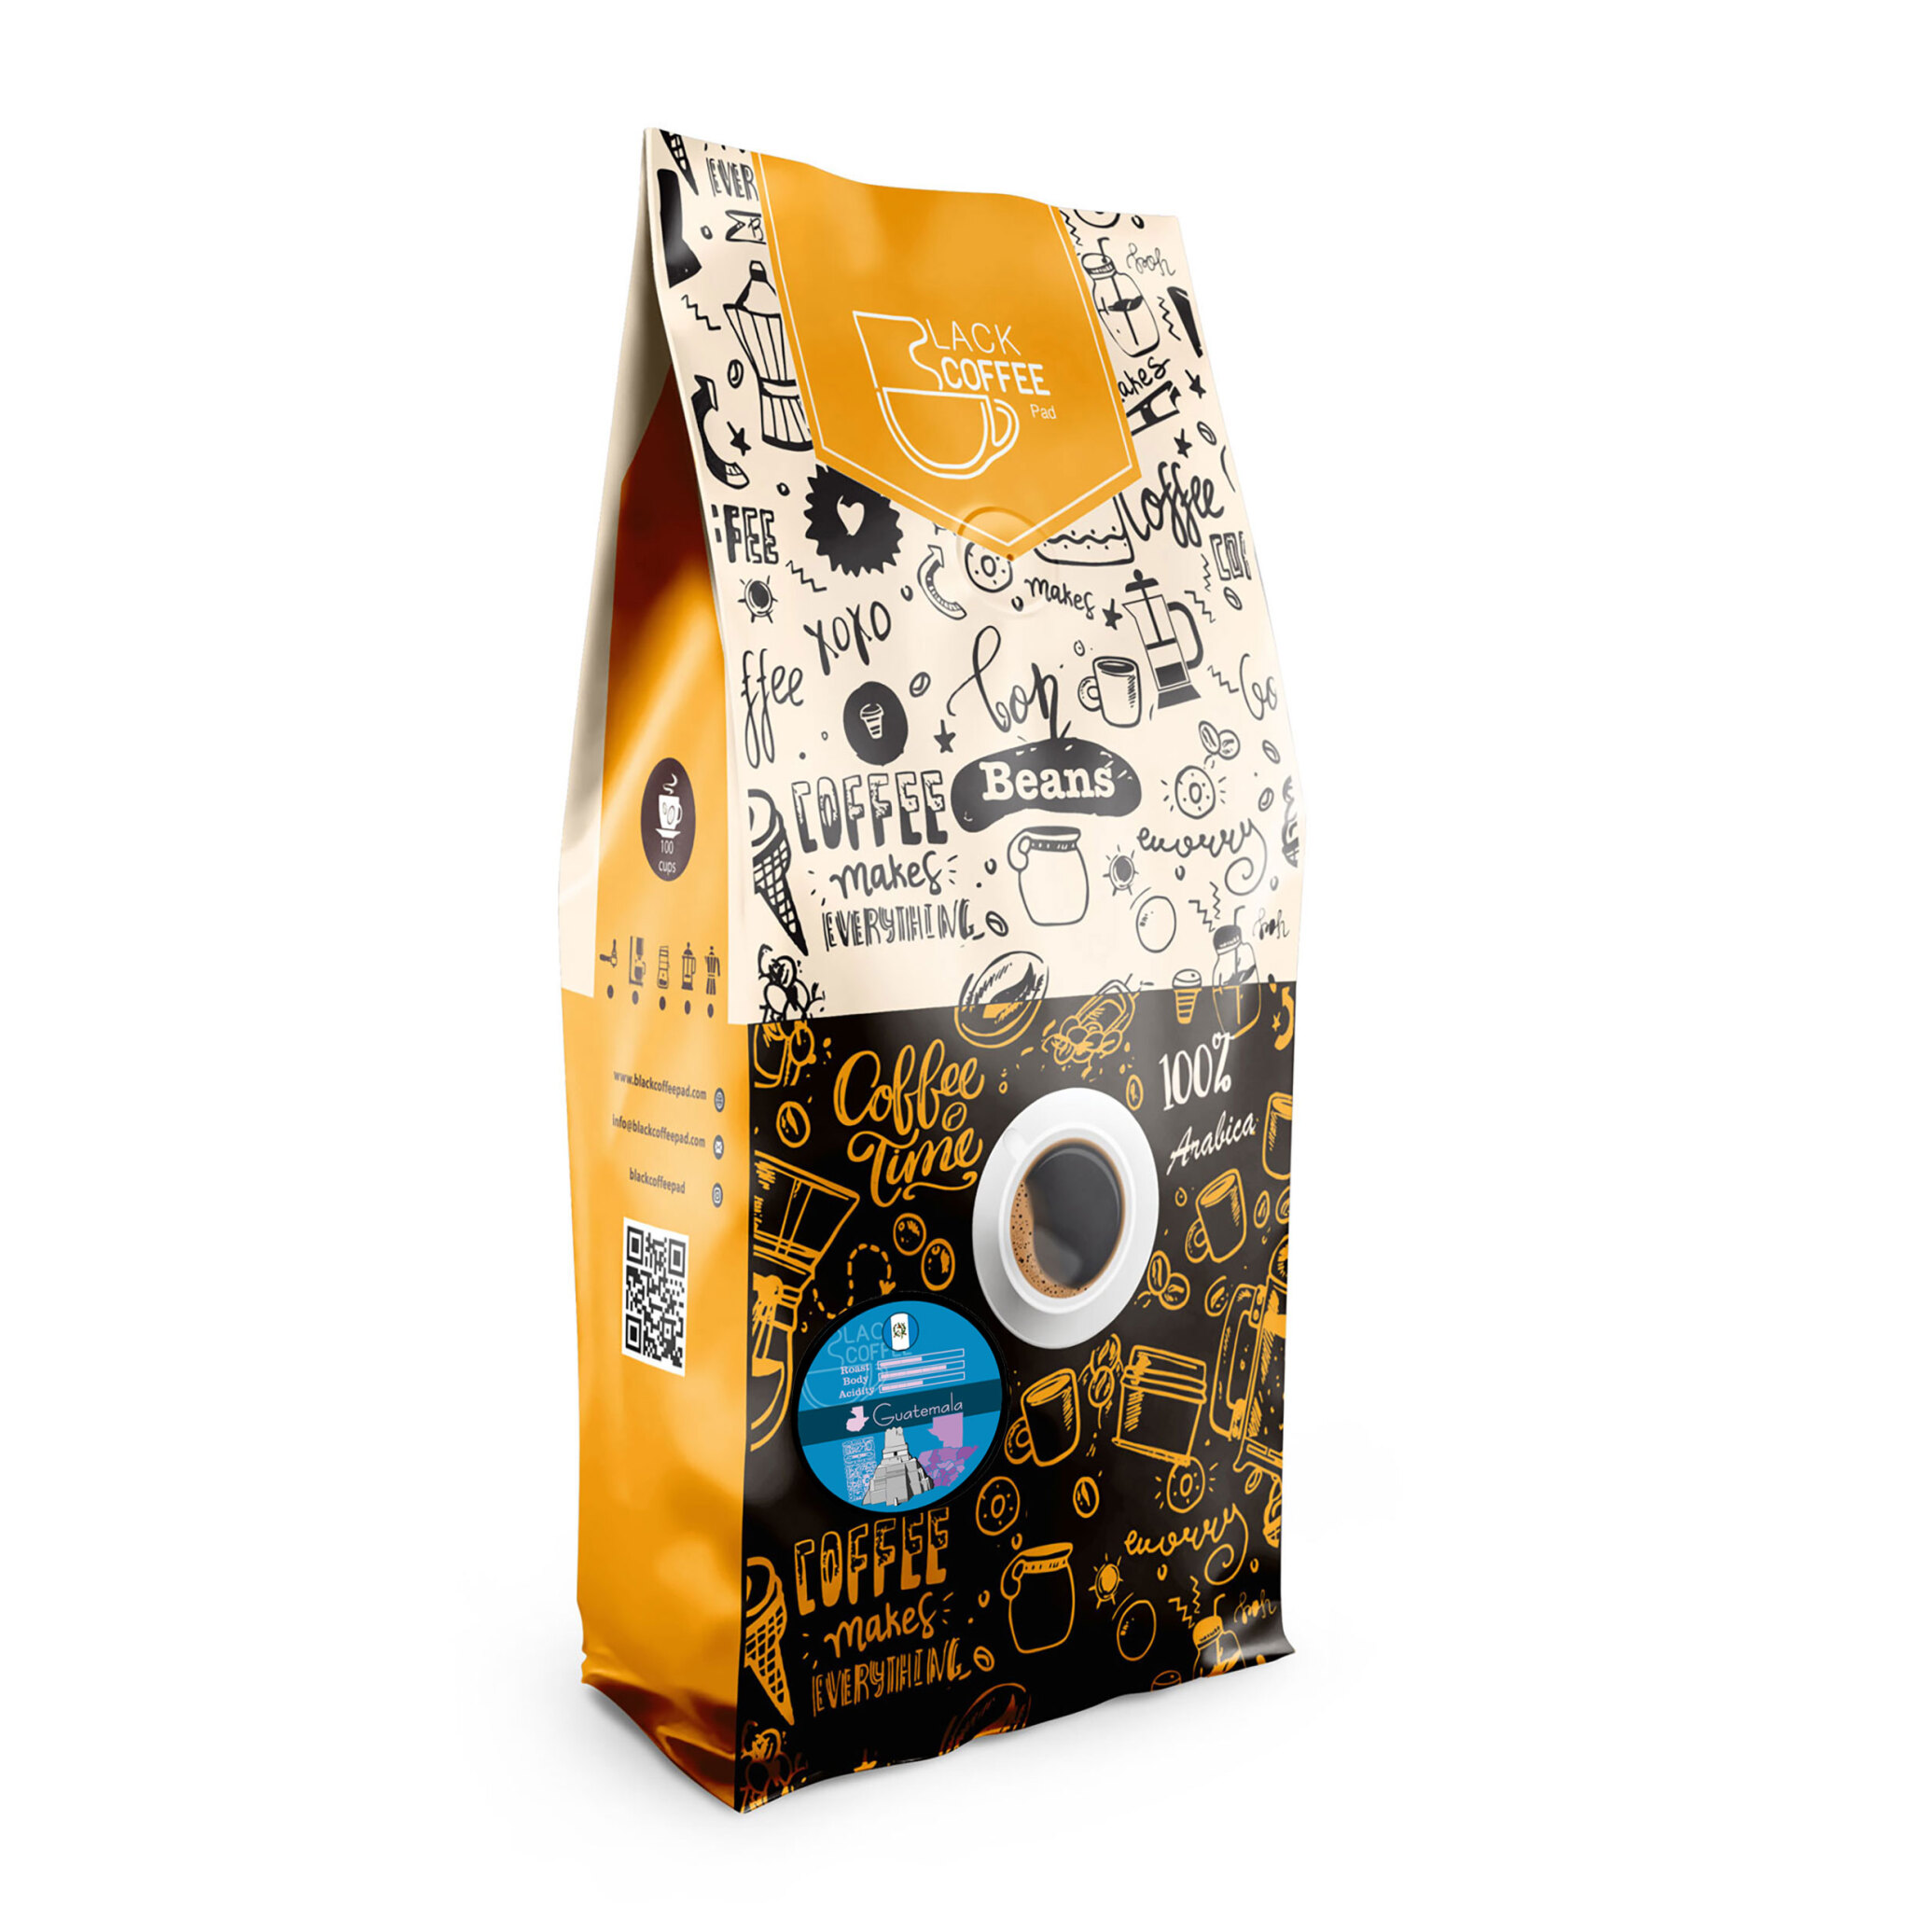  دانه قهوه گواتمالا - Guatemala Coffee Beans - یک کیلو گرم | بلک کافی | فروشگاه محصولات قهوه و دانه قهوه 